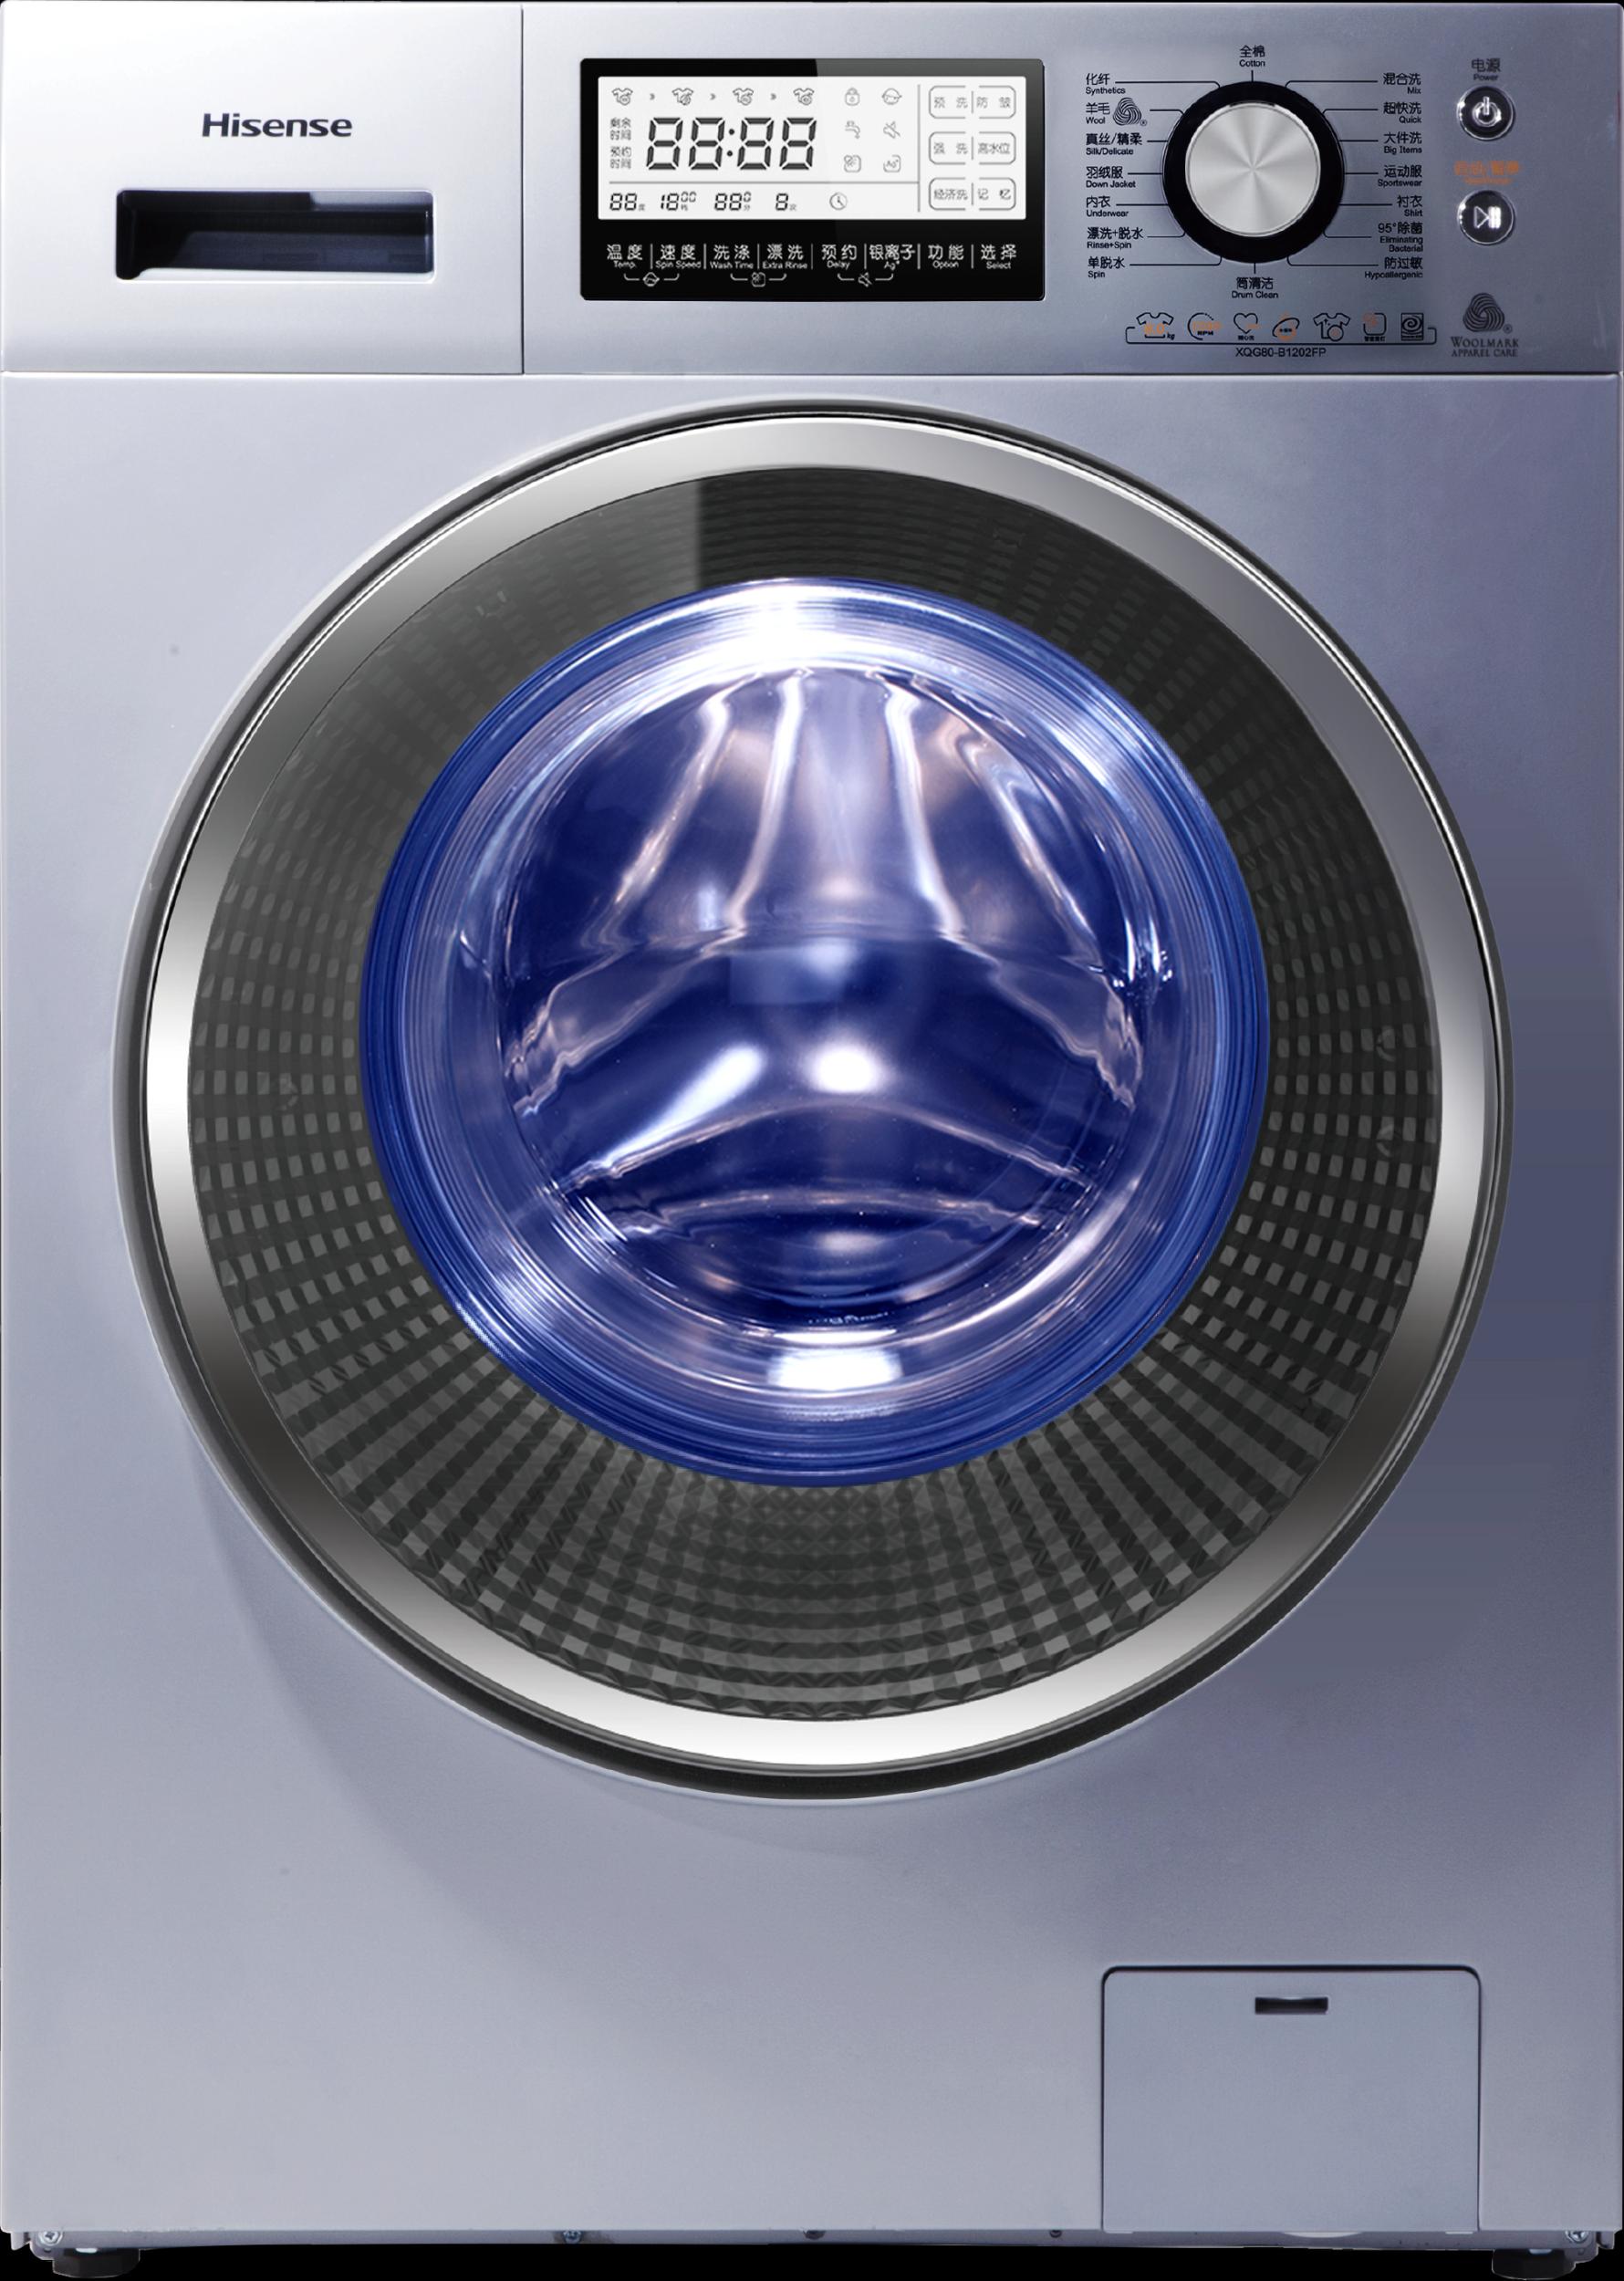 技术升级更贴心 海信旋瀑洗洗衣机赢用户青睐 - 温州网 - 数码家电